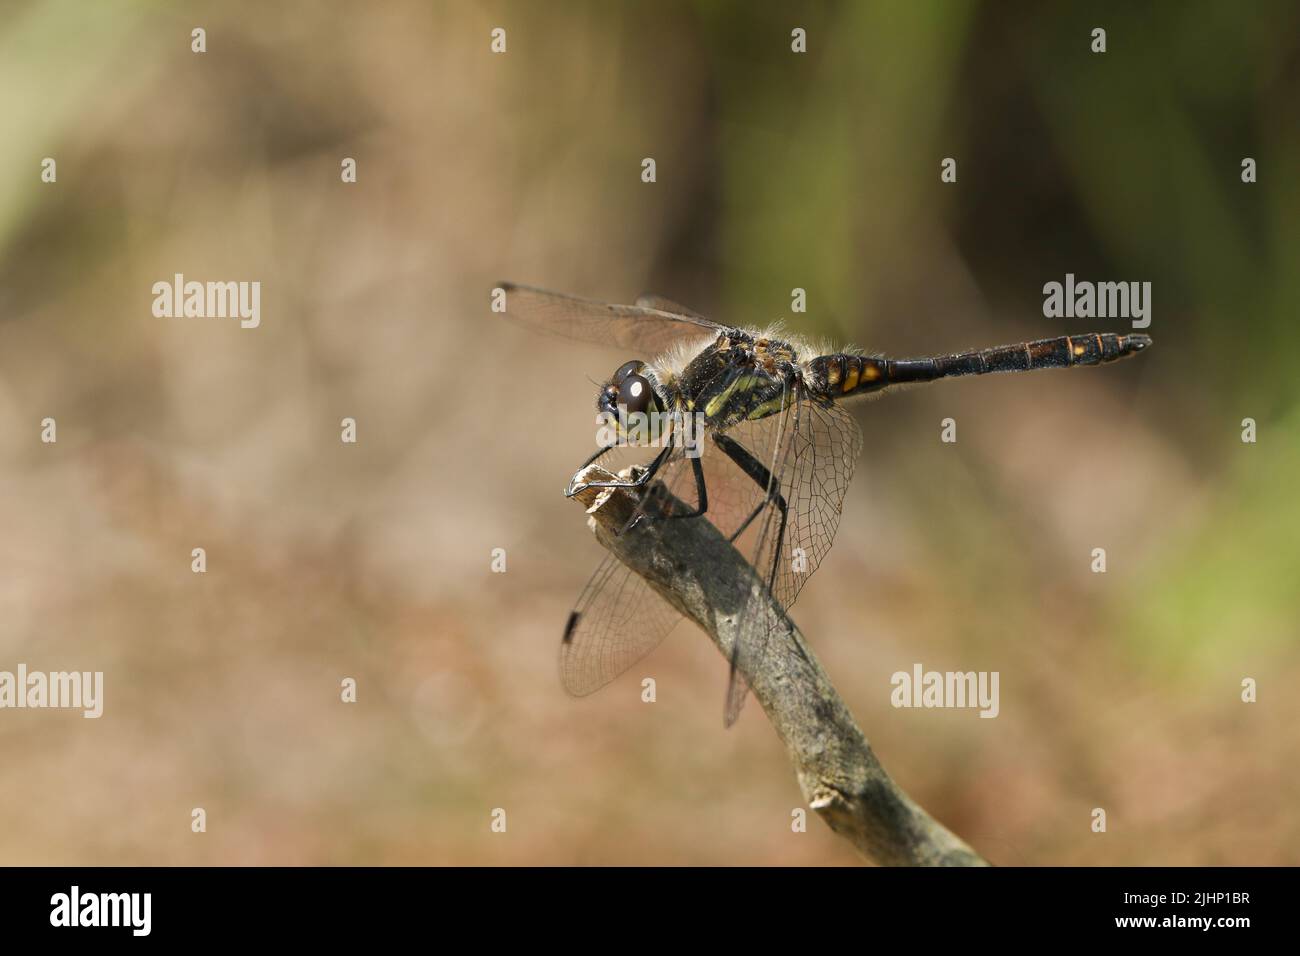 Un hombre impresionante Dragonfly Darter Negro, Sympetrum danae, posando en una ramita en el borde de un pantano. Foto de stock